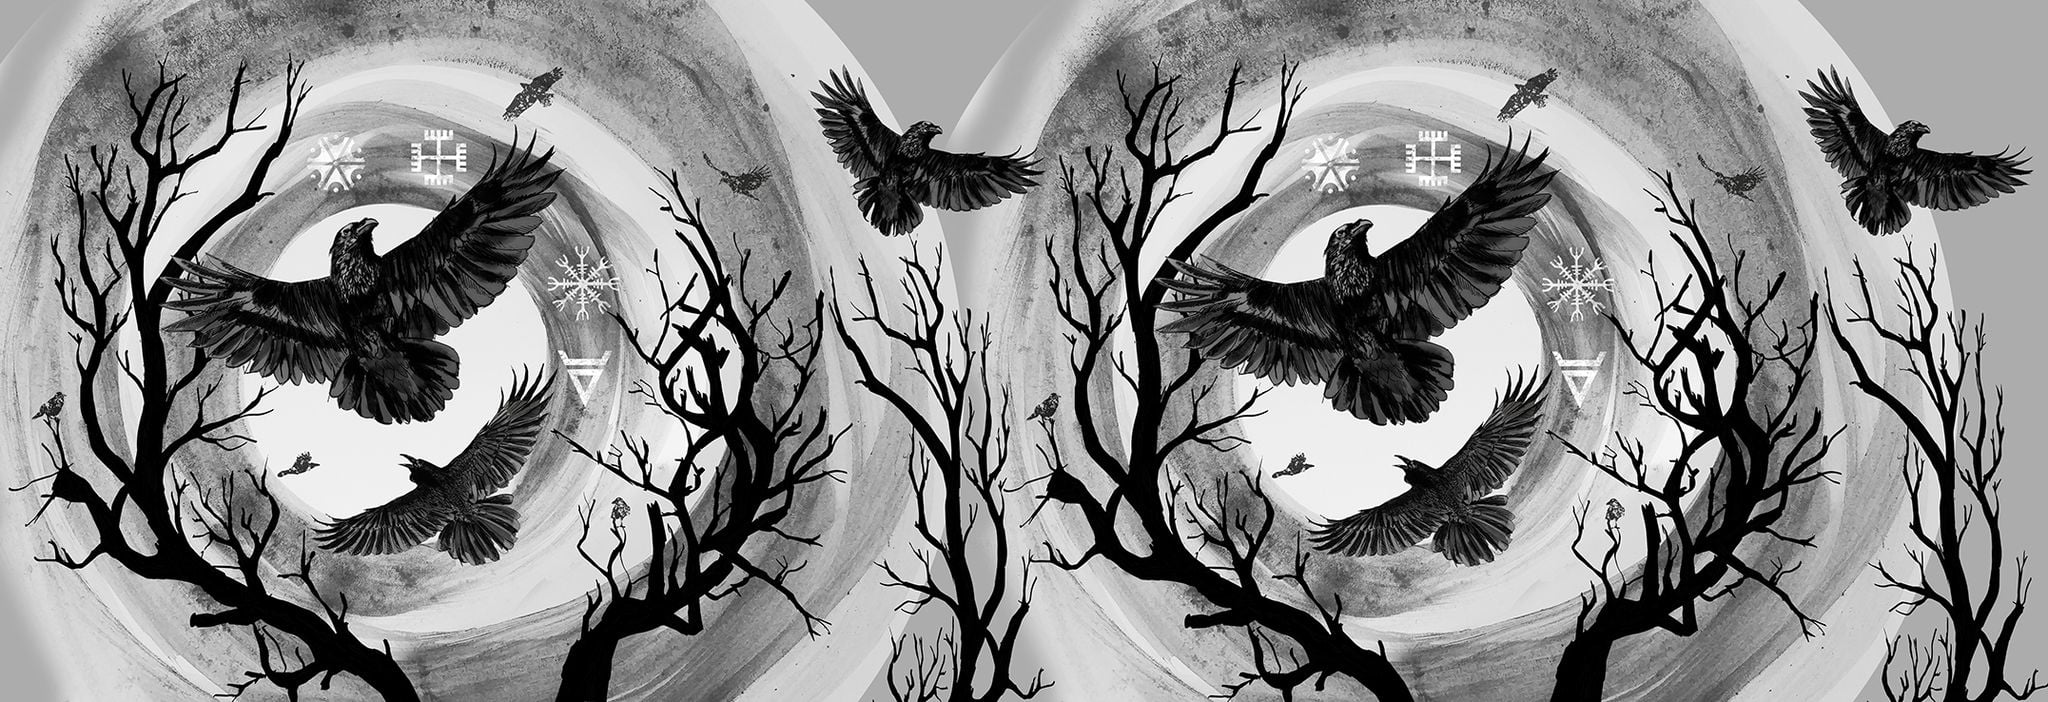 Wild Slings Les corbeaux Corbeaux de l’orage La nuit Wrap (linen) Image